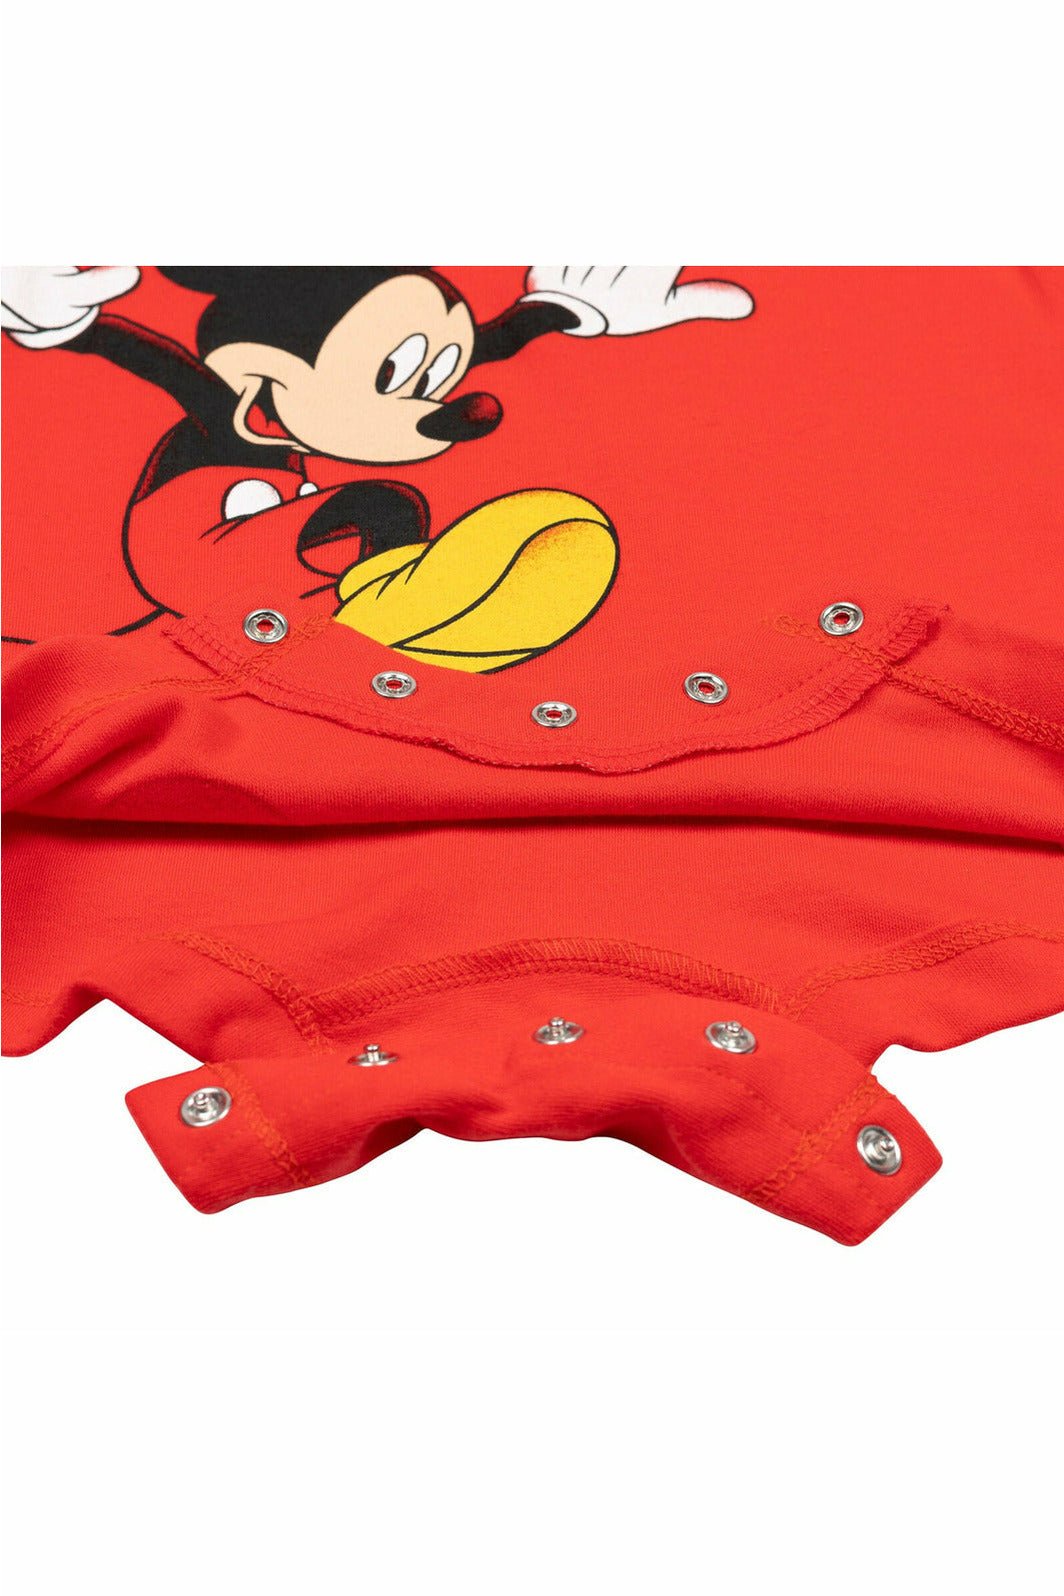 Disney Short Sleeve Romper & Sunhat - imagikids